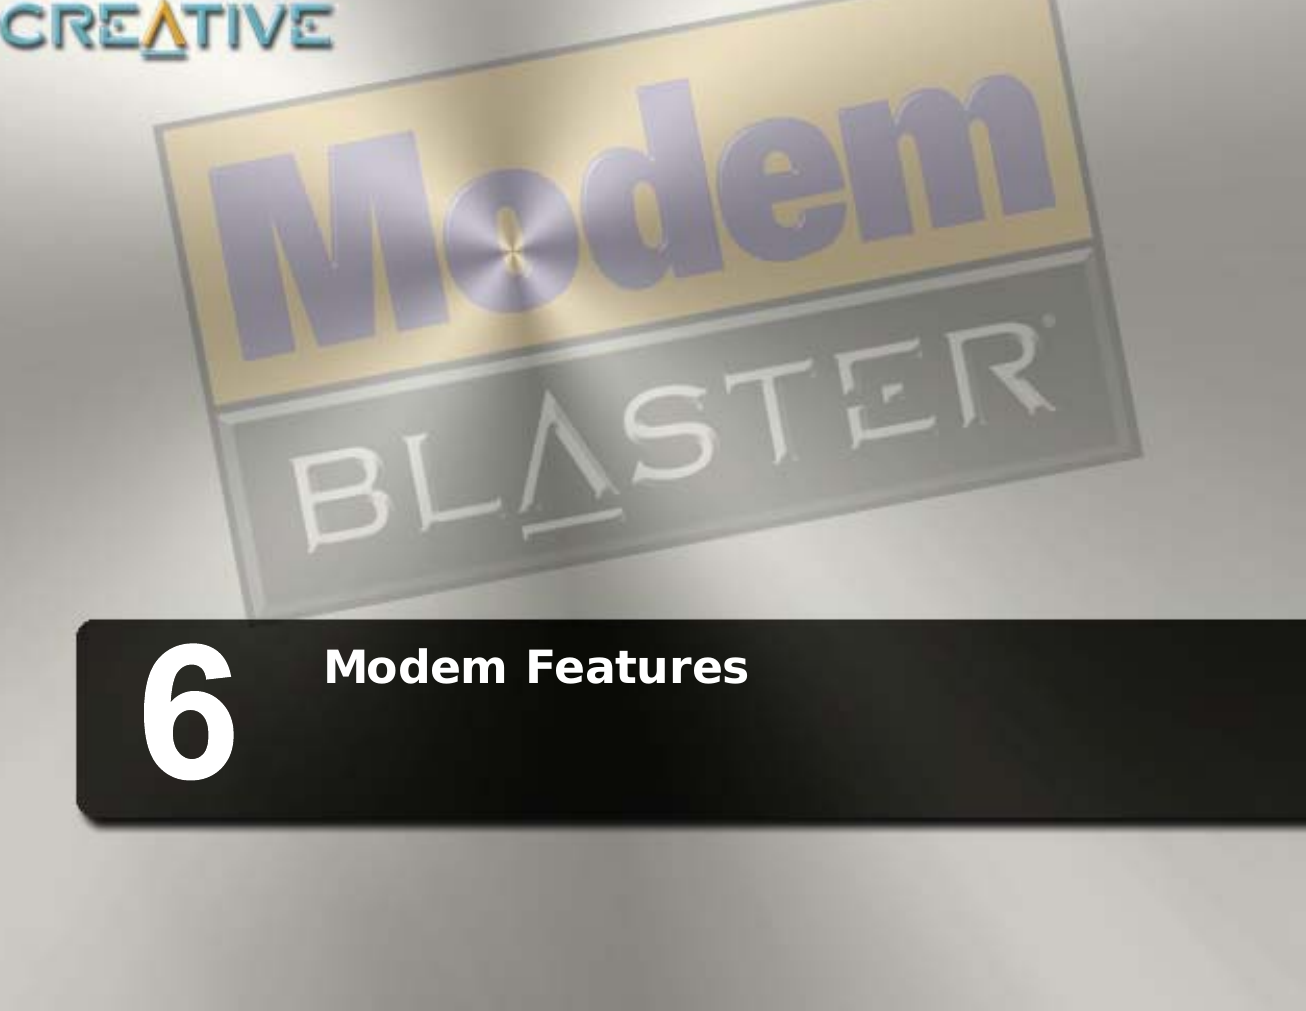 Modem Features